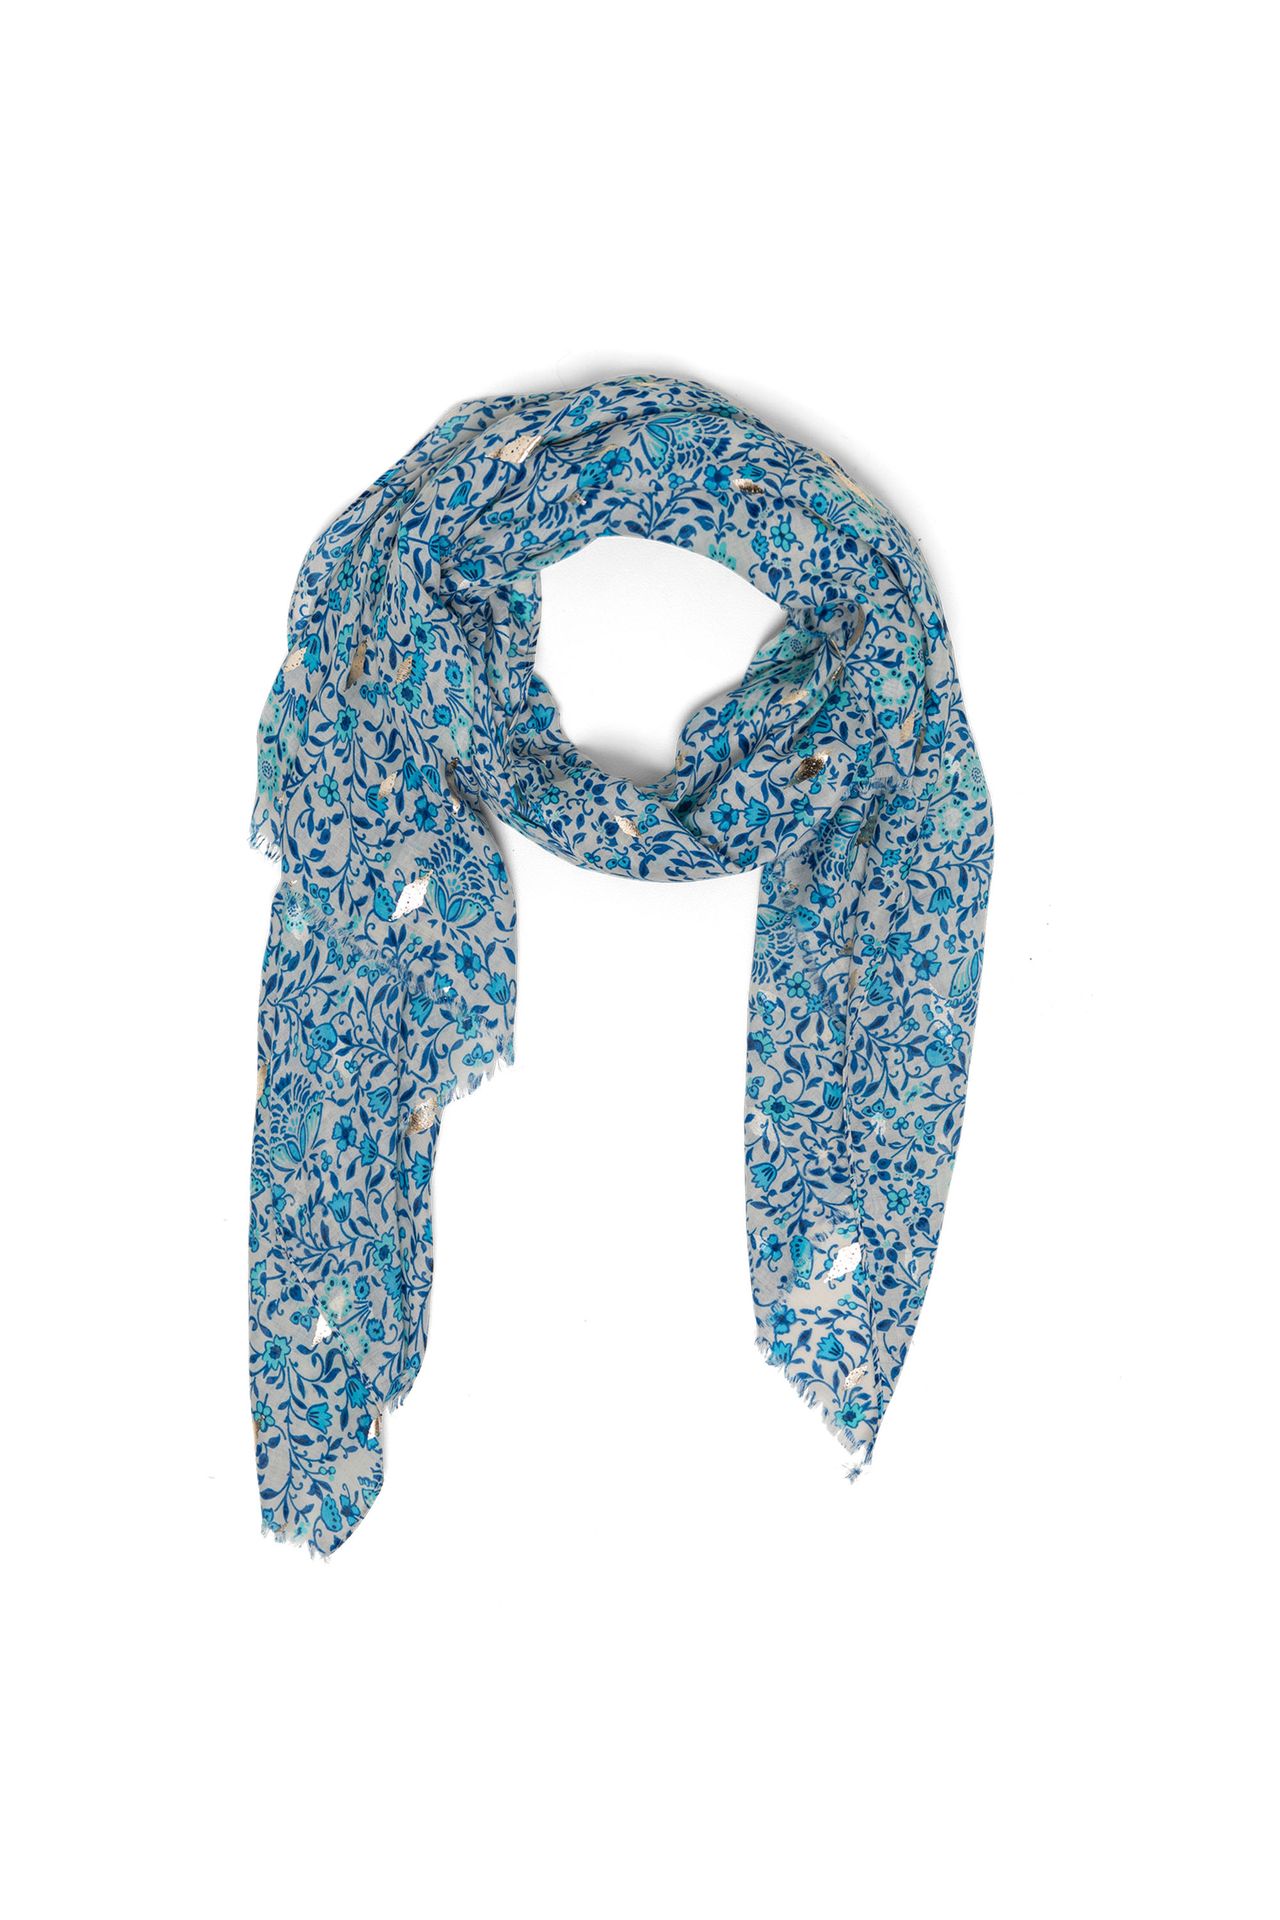 Norah Blauwe sjaal met tassels cobalt multicolor 213598-469